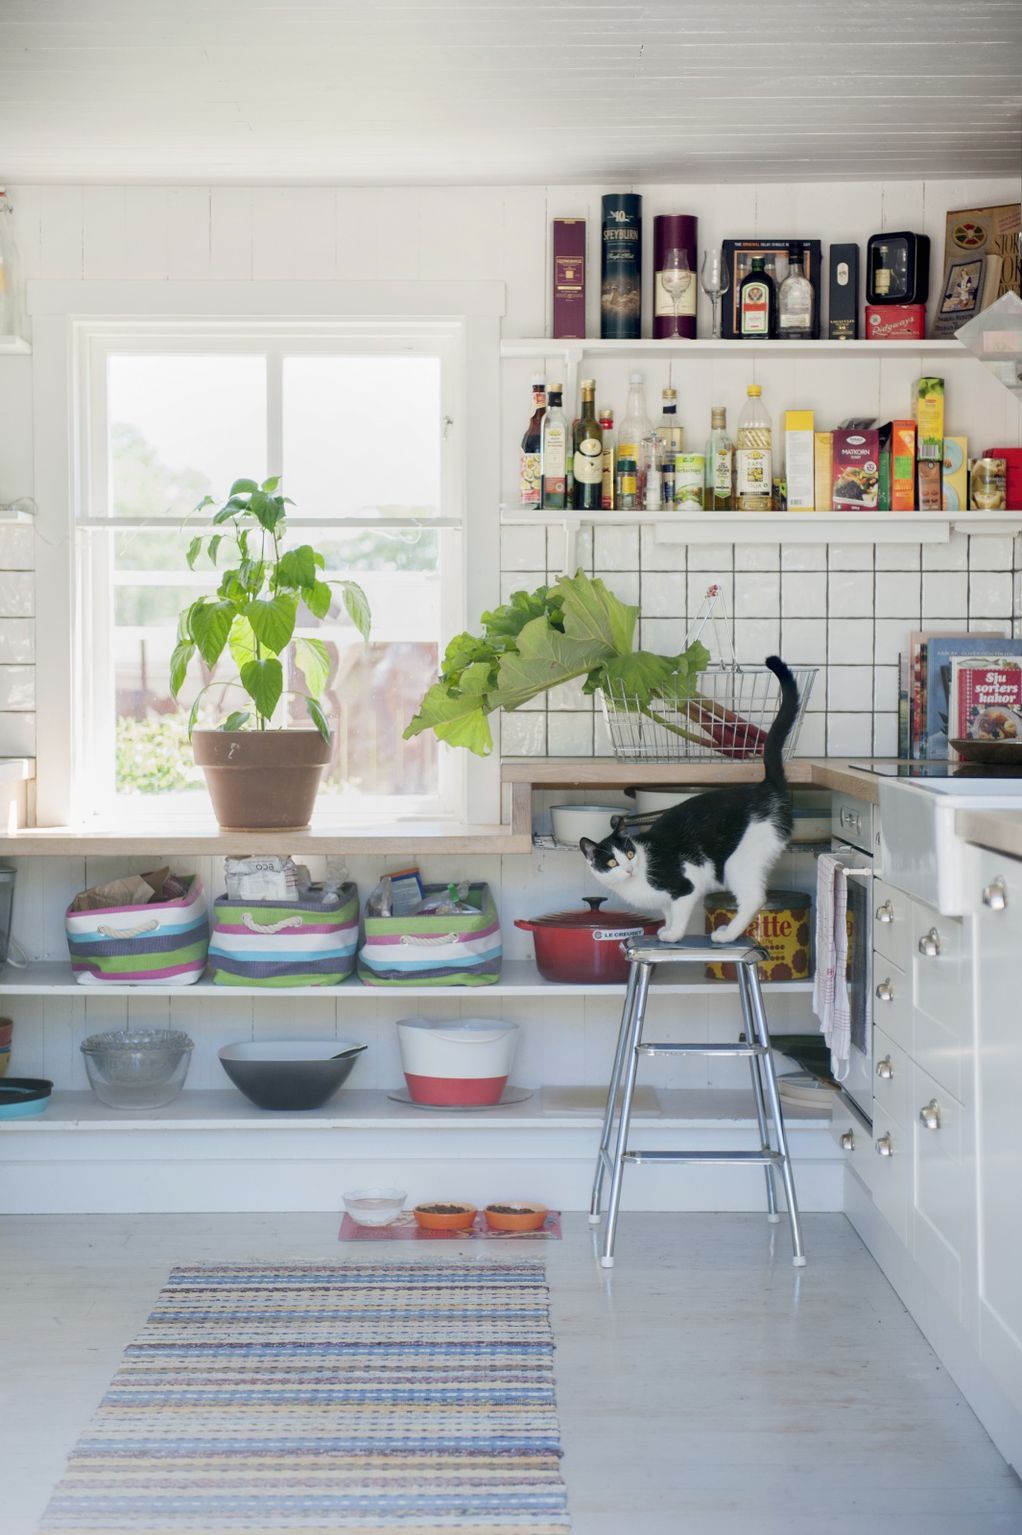 12 докази дека кујната е совршено место за украсни растенија